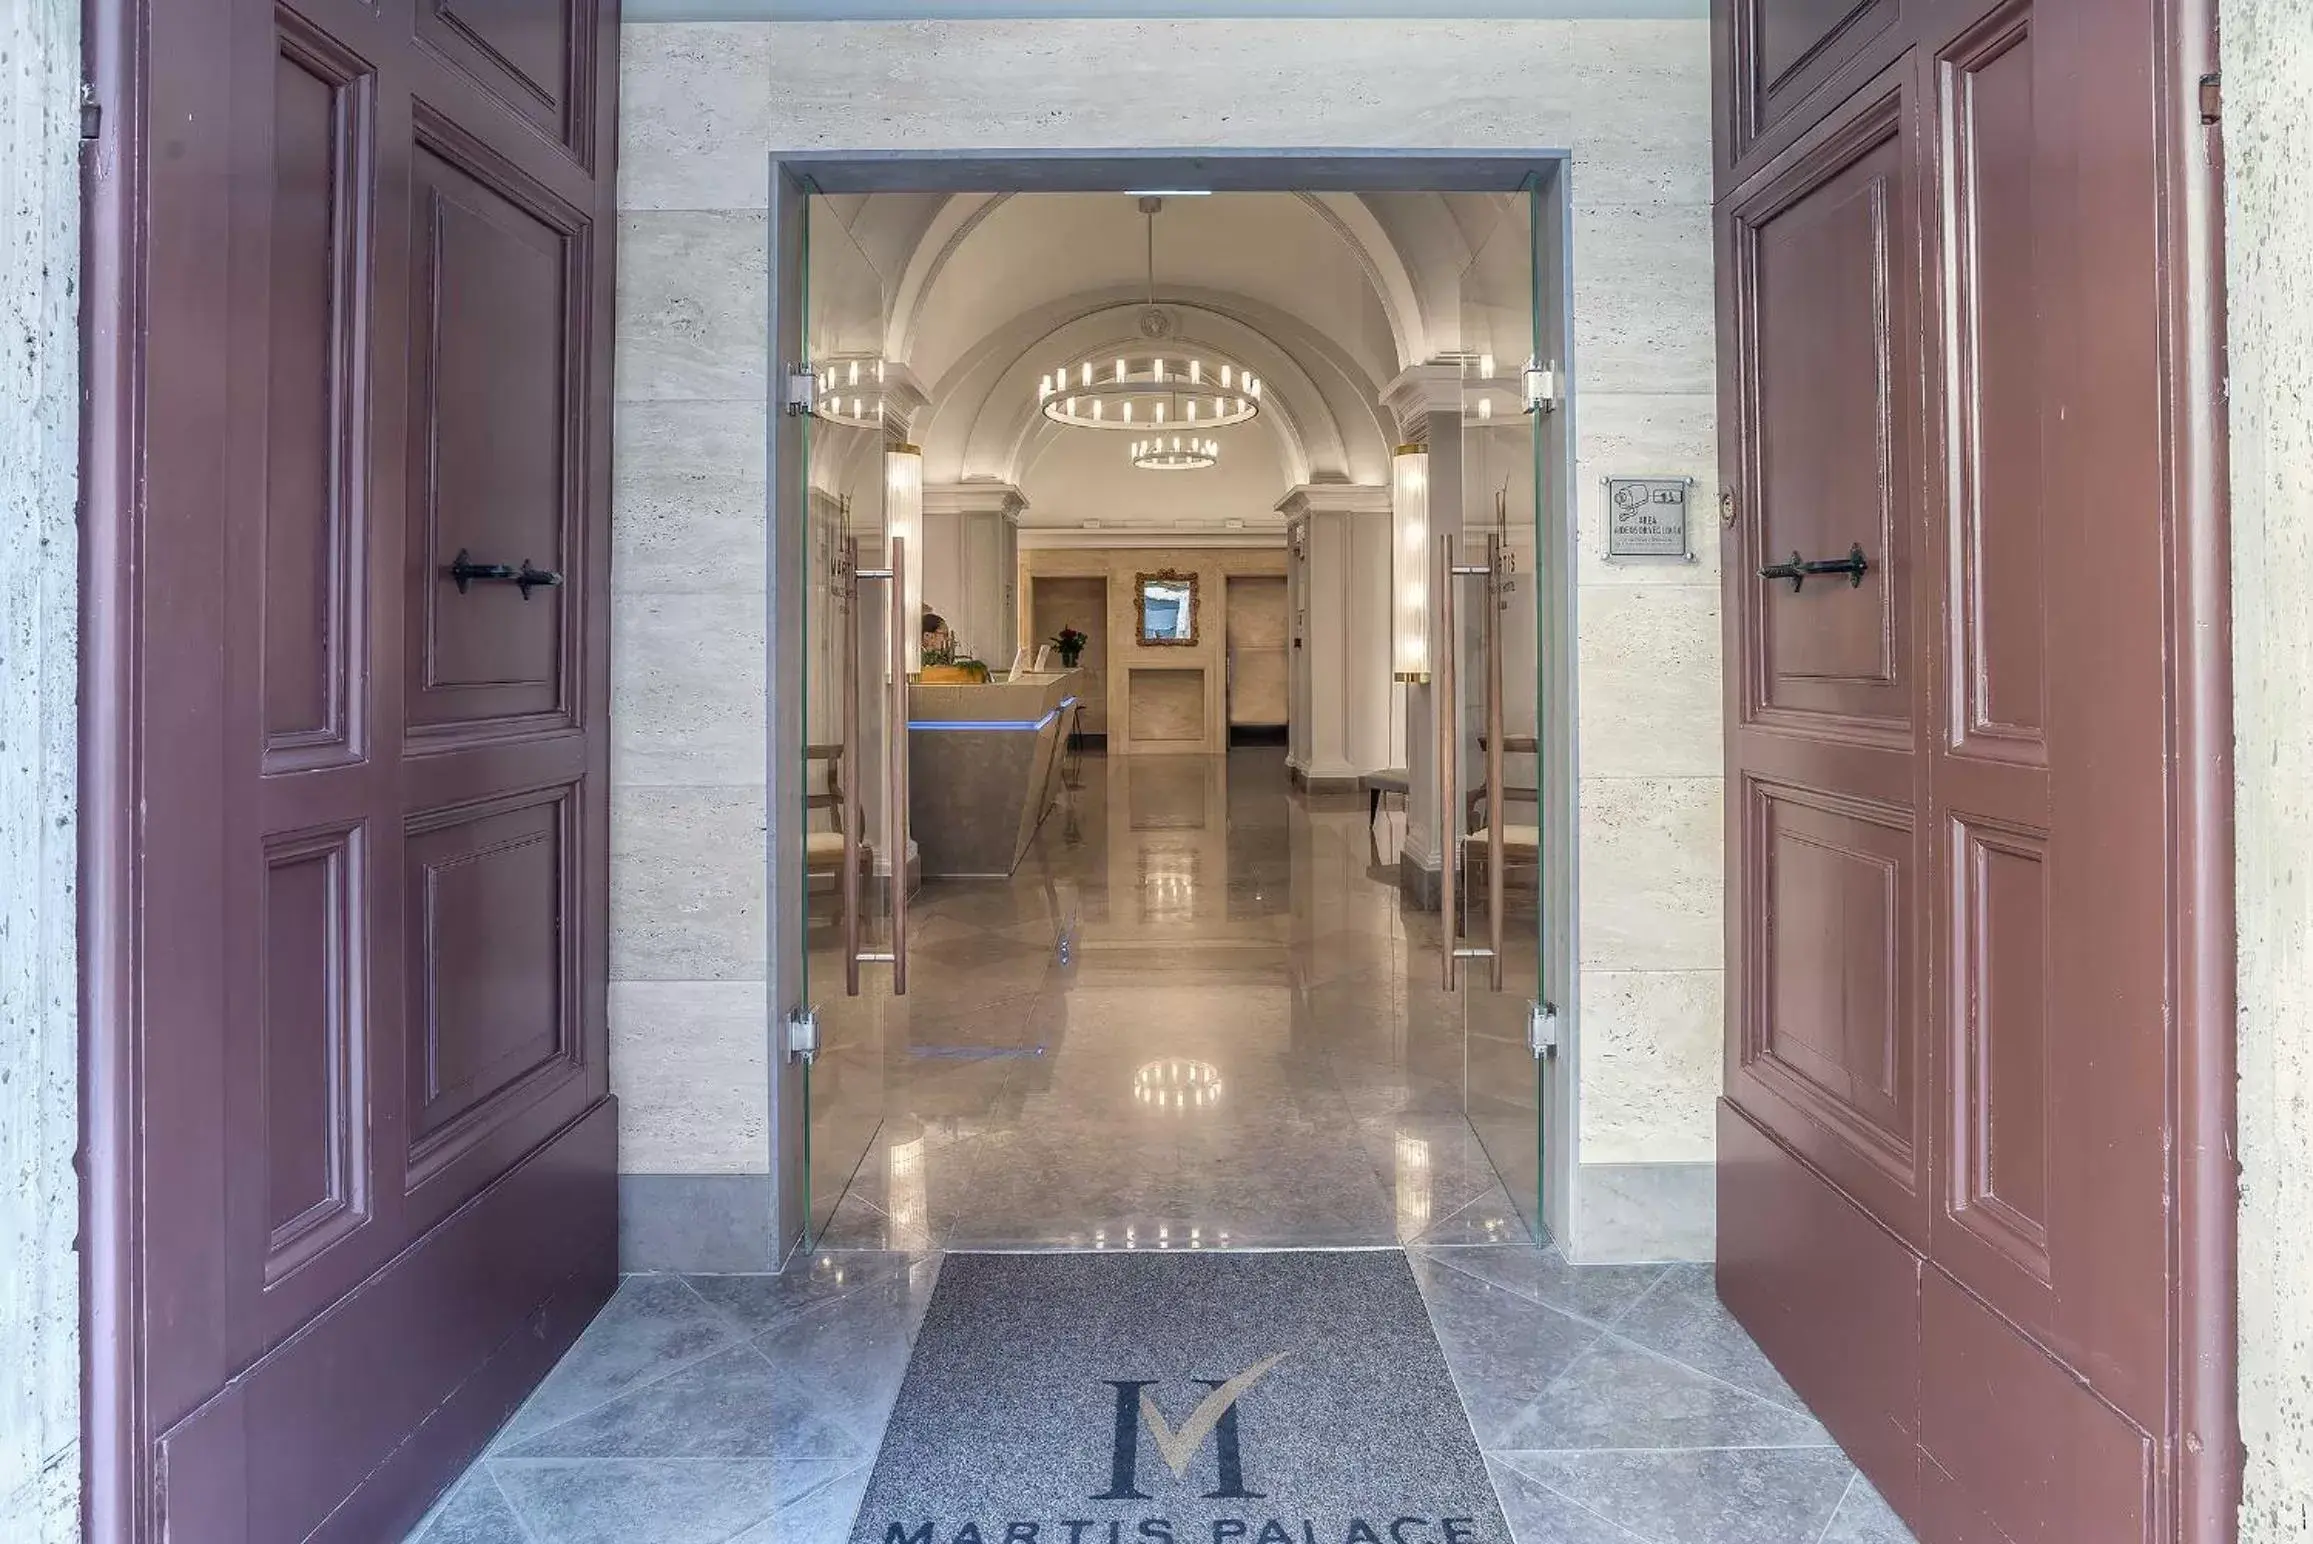 Hotel Martis Palace